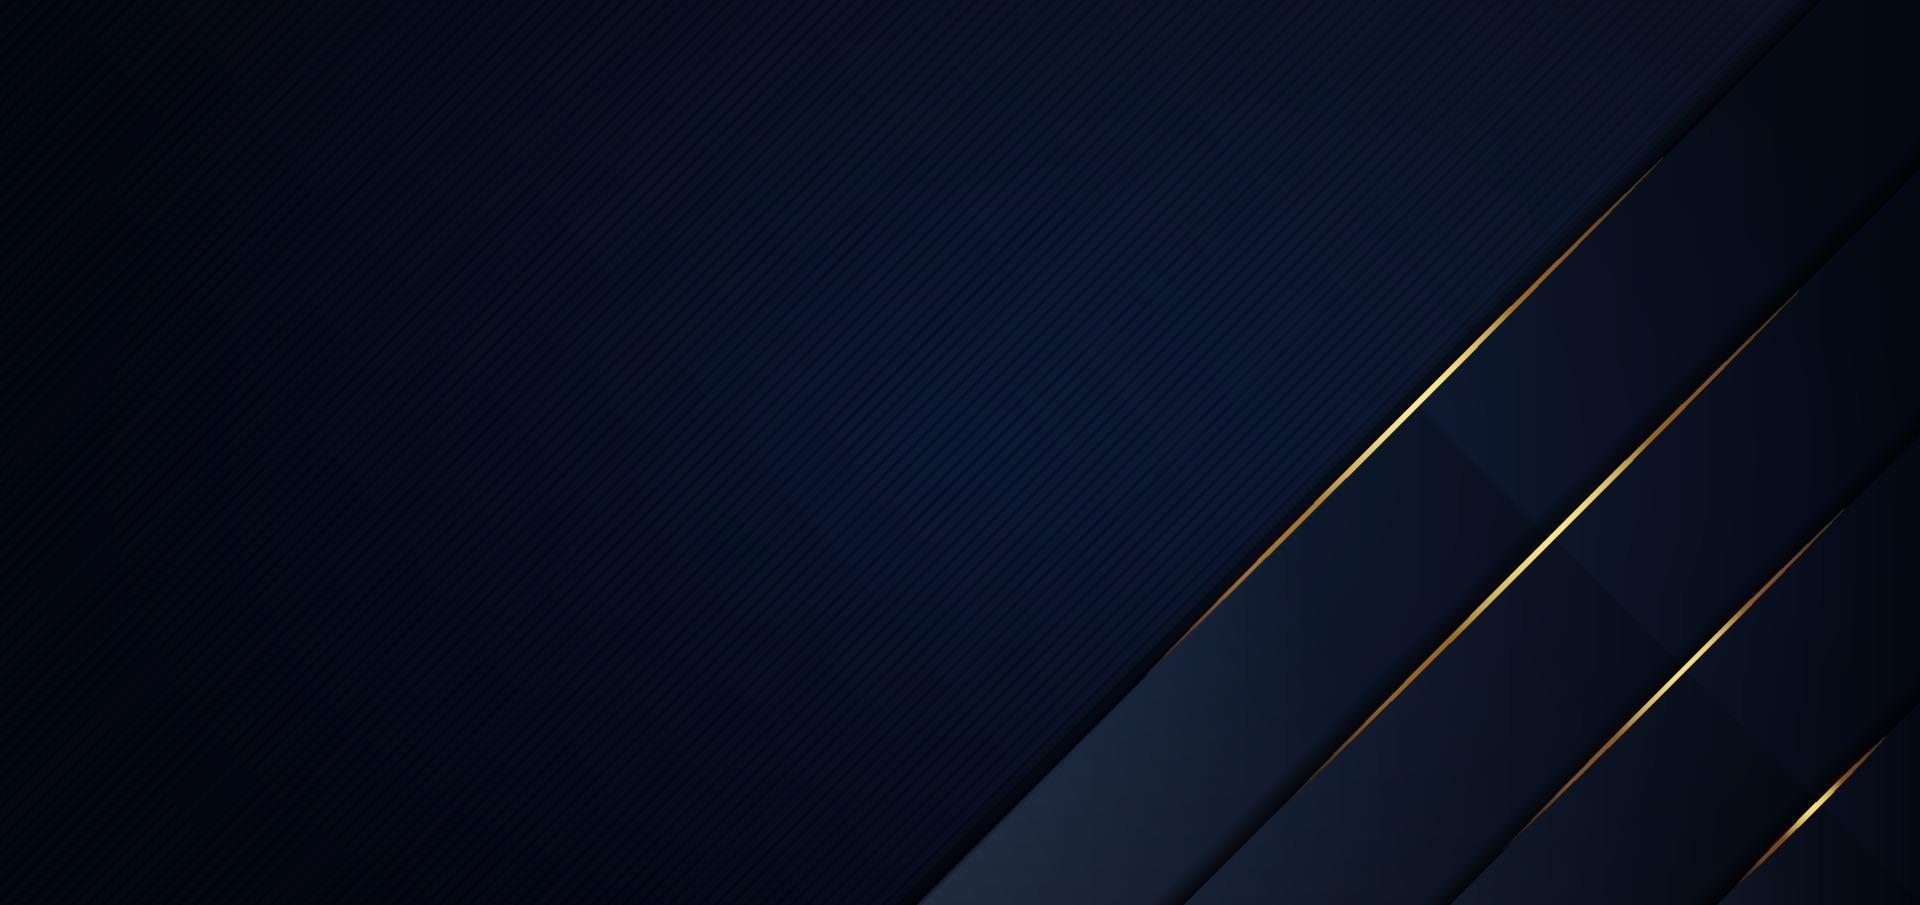 abstracte sjabloon blauwe geometrische diagonale achtergrond met gouden lijn. luxe stijl. vector